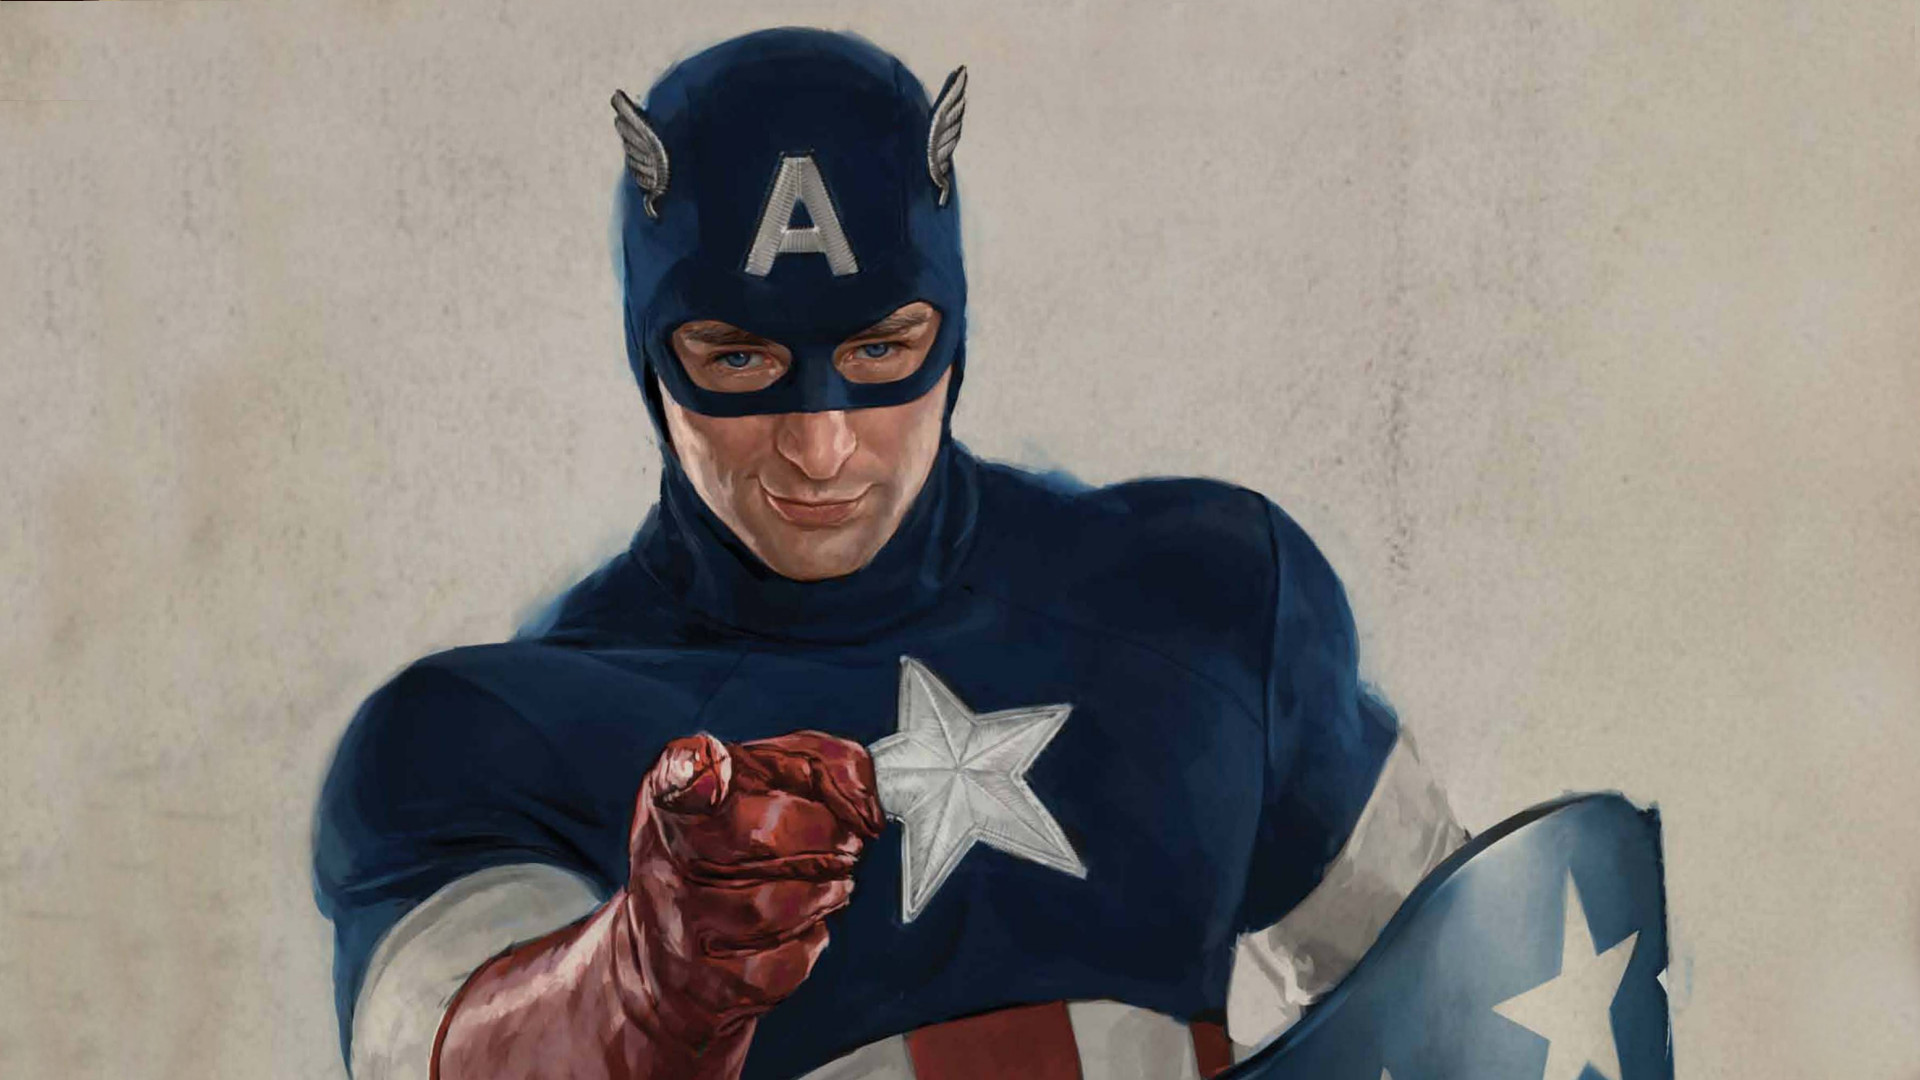 Descarga gratuita de fondo de pantalla para móvil de Películas, Capitan América, Capitán América: El Primer Vengador.